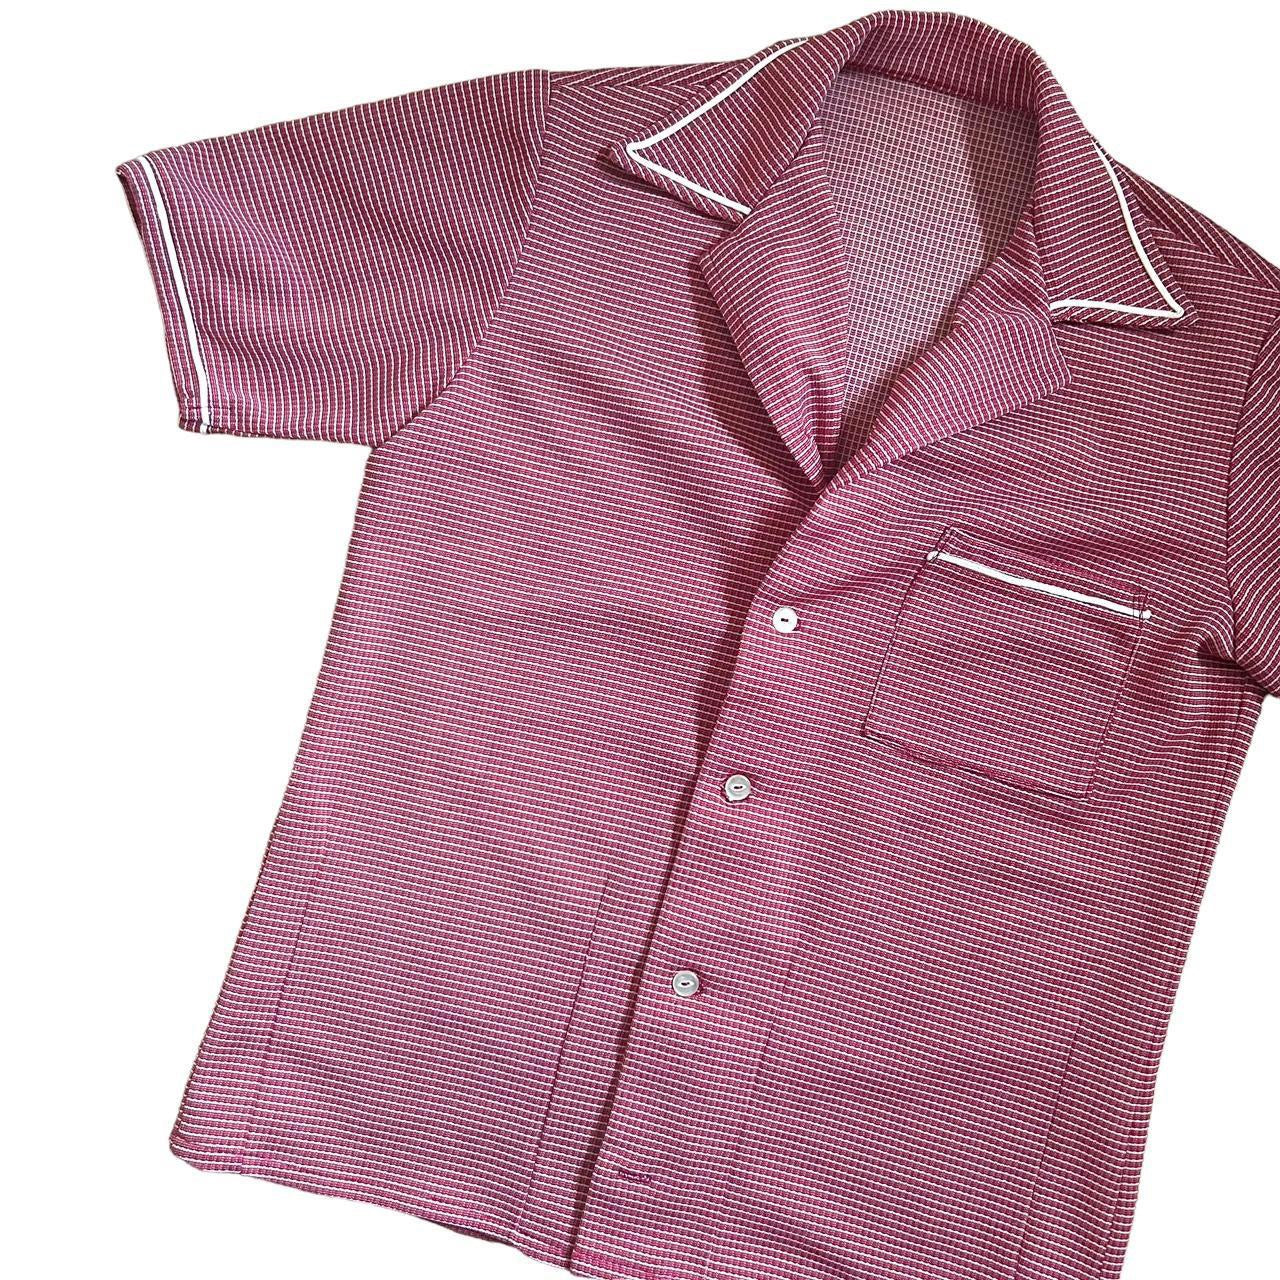 80s gingham plaid blouse M/L